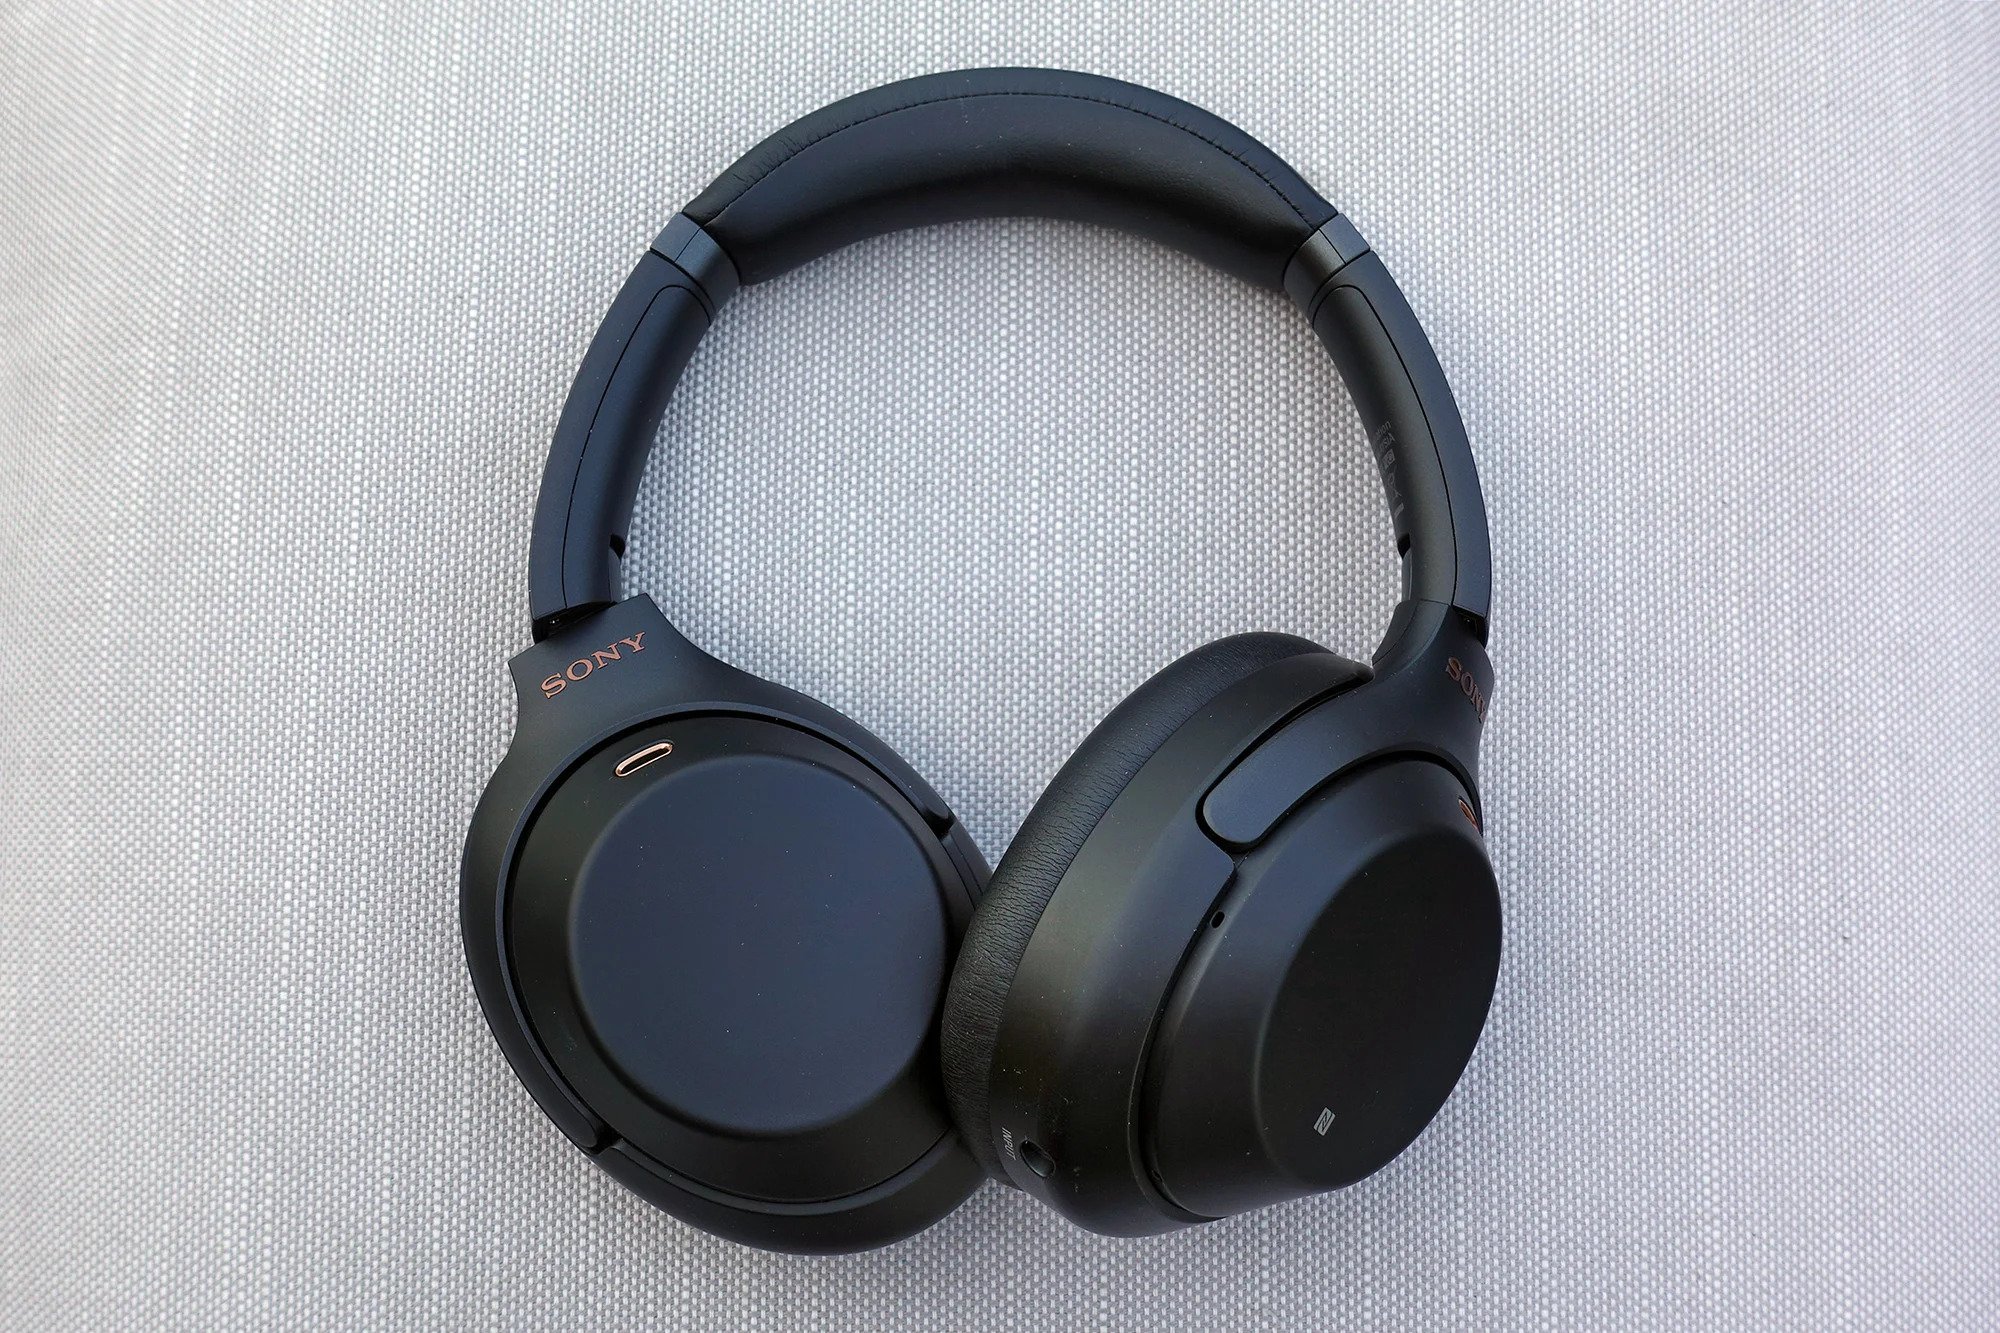 Sony wh-1000xm3 headphones